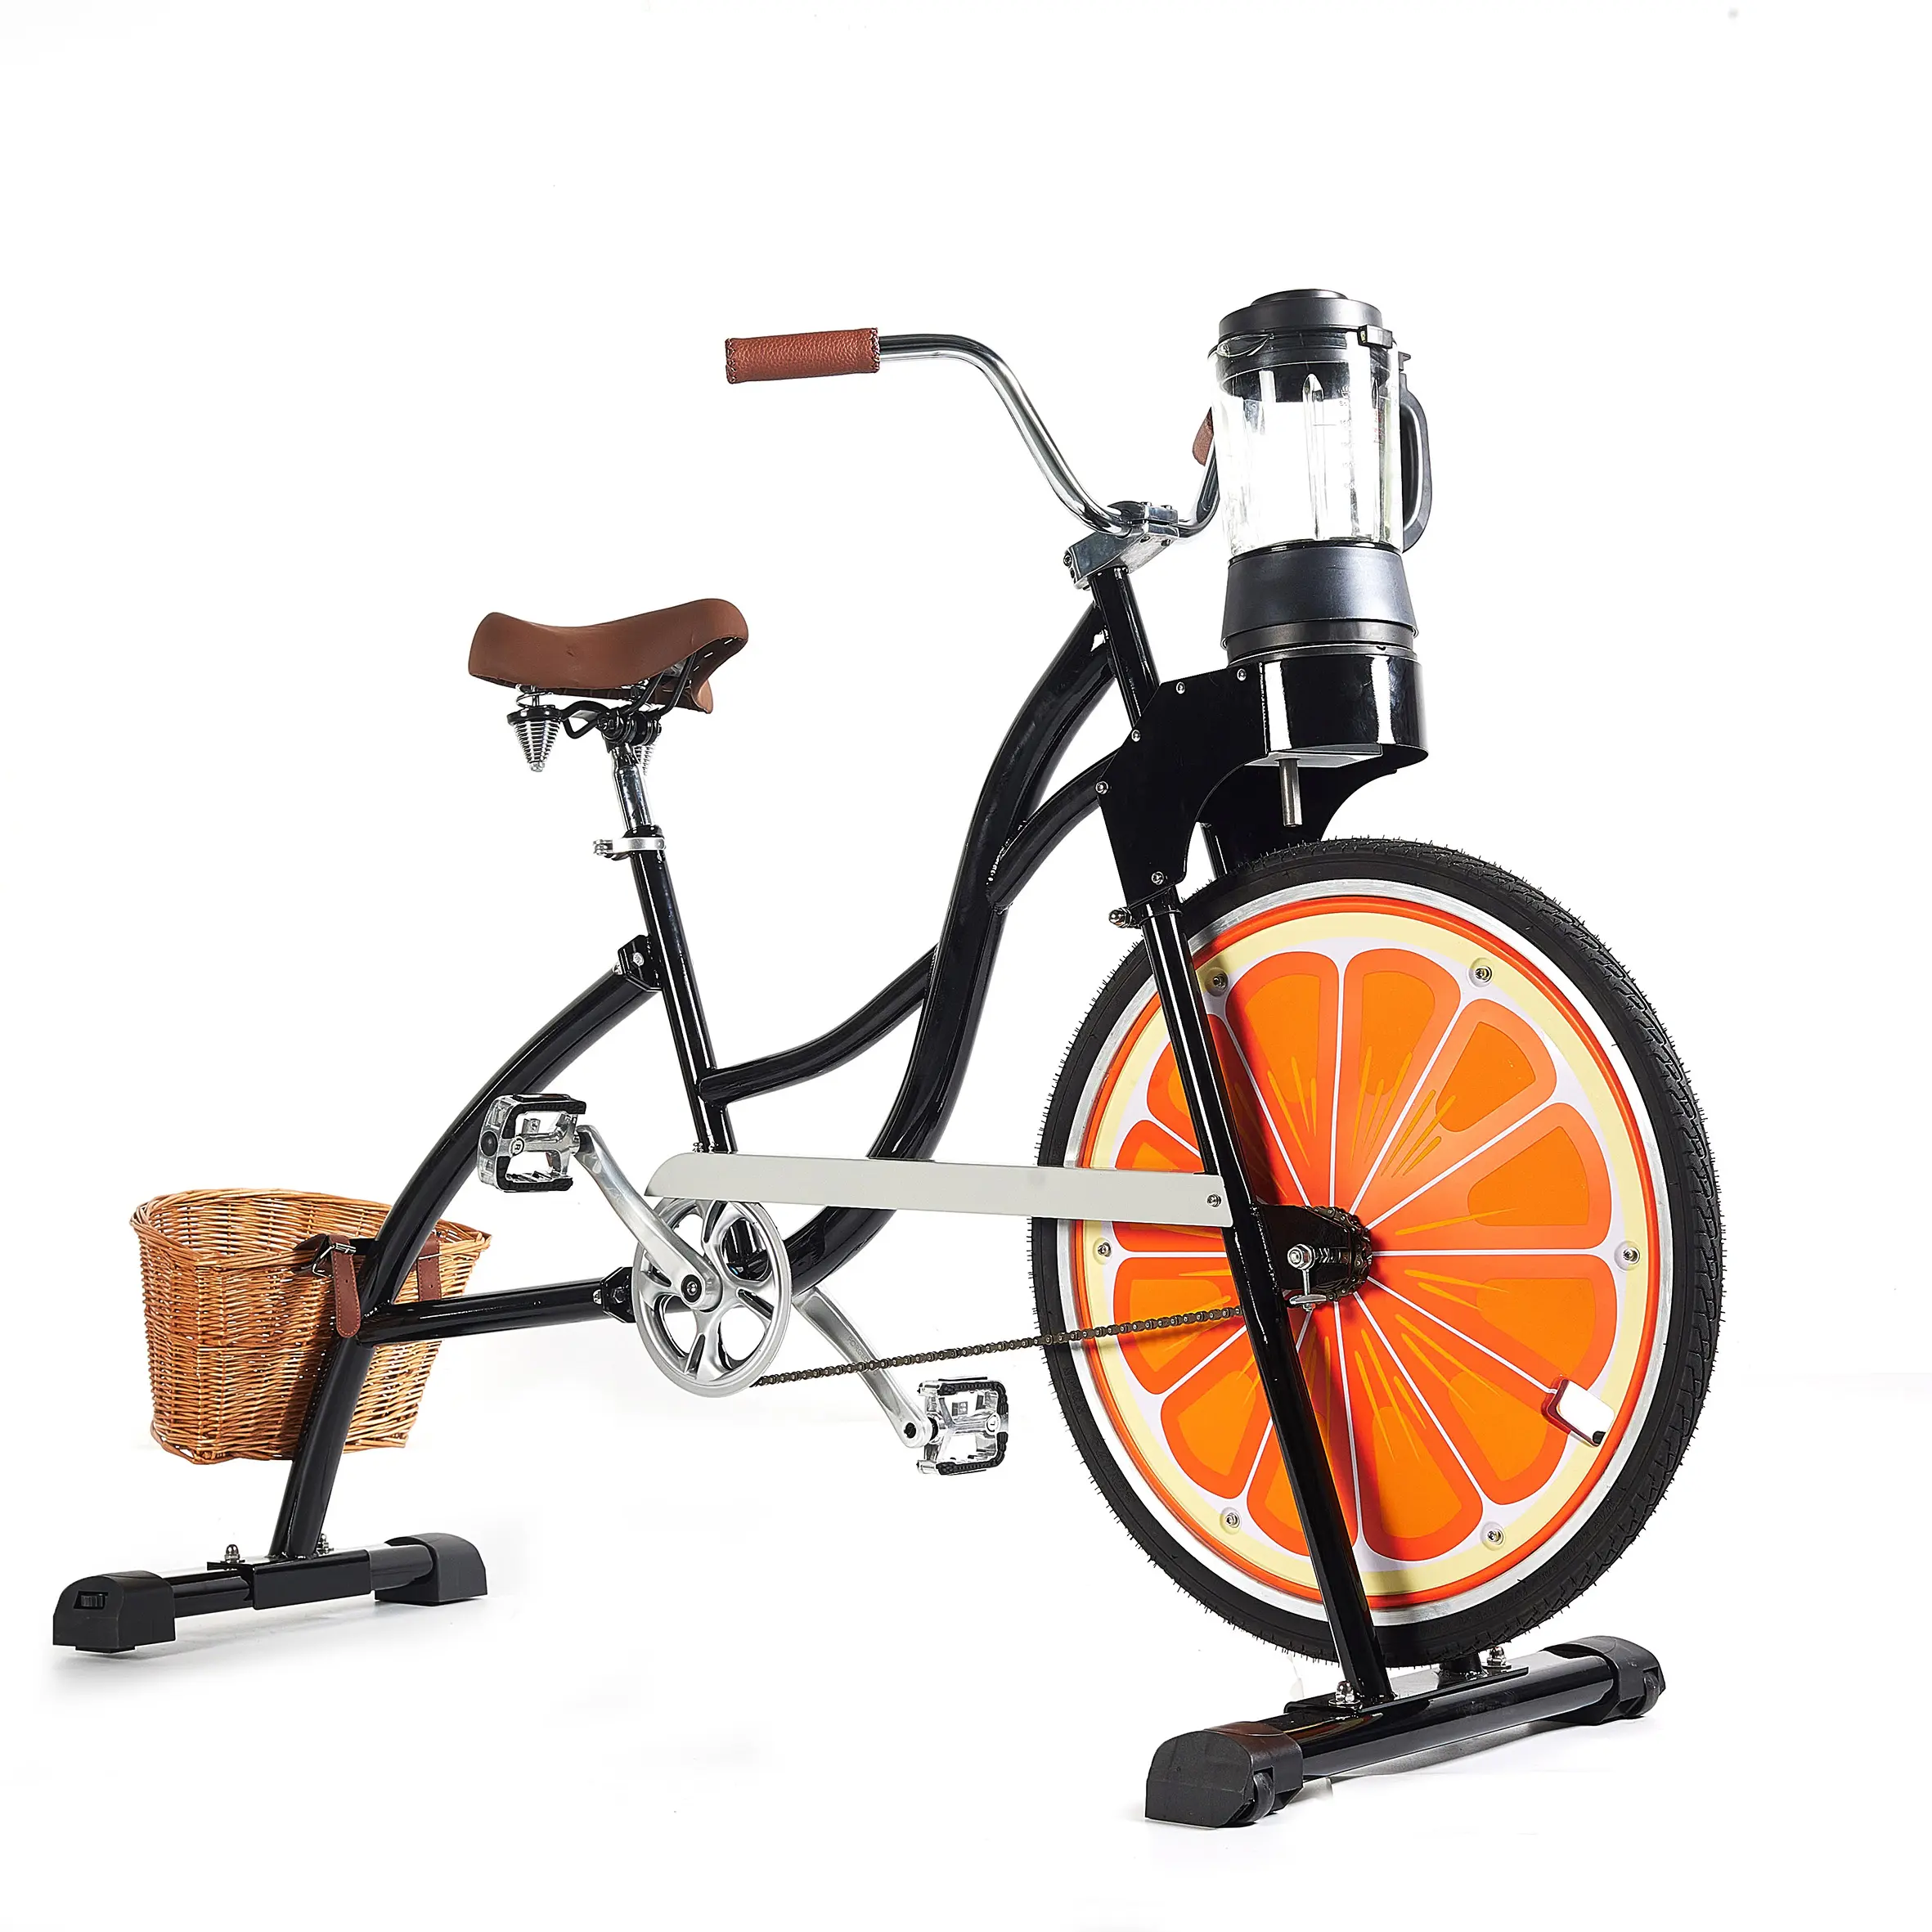 EXI-máquinas de bicicleta, engranaje fijo, publicidad, negro, prensado en frío, ver Pulper, verduras, frutas, Pedal